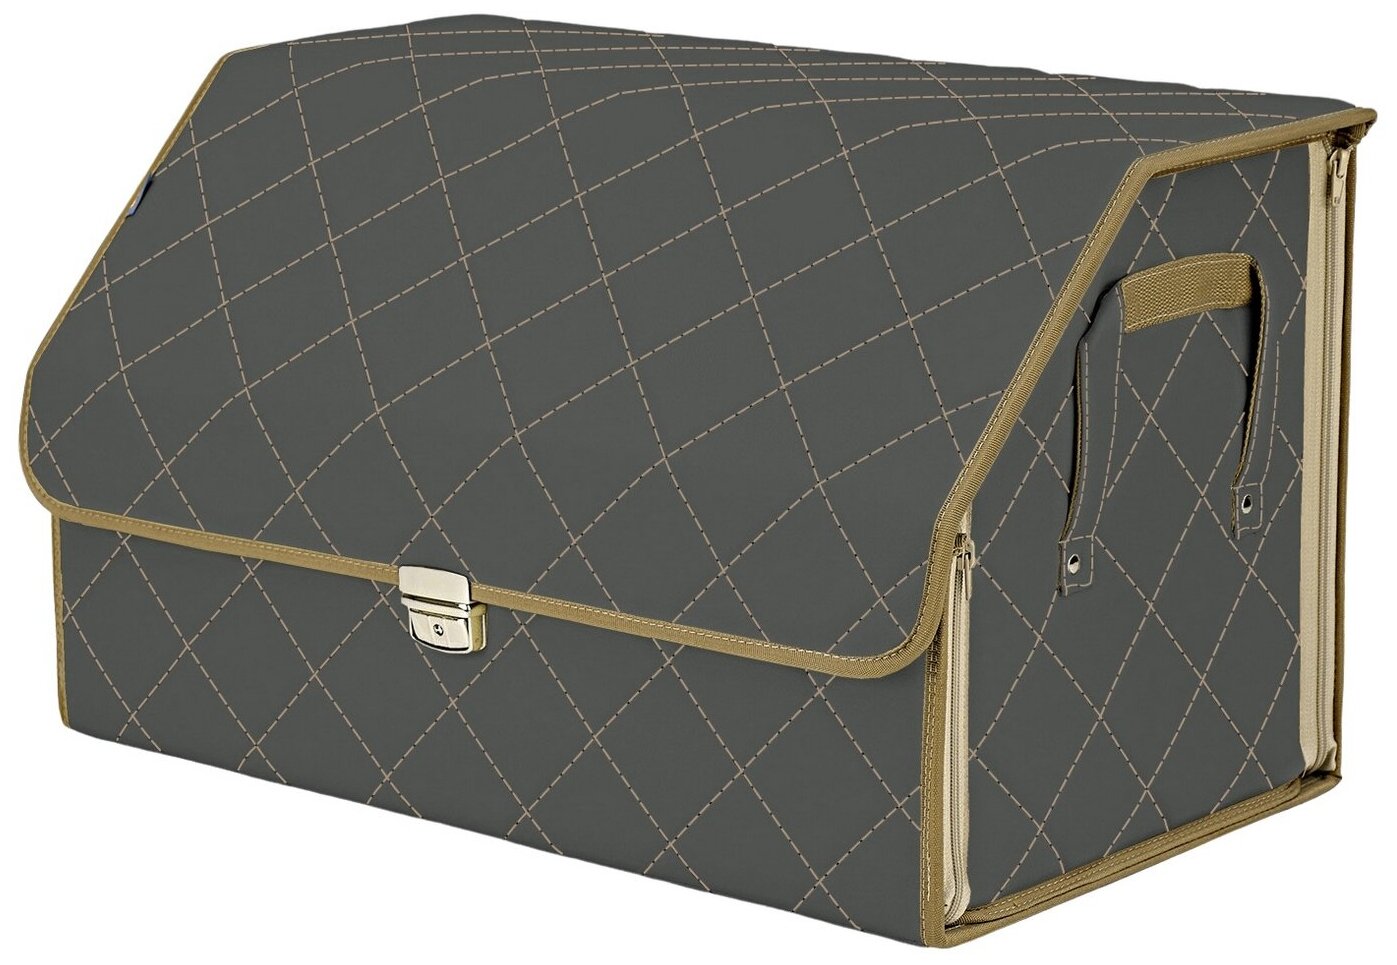 Органайзер-саквояж в багажник "Союз Премиум" (размер XL). Цвет: серый с бежевой прострочкой Ромб.